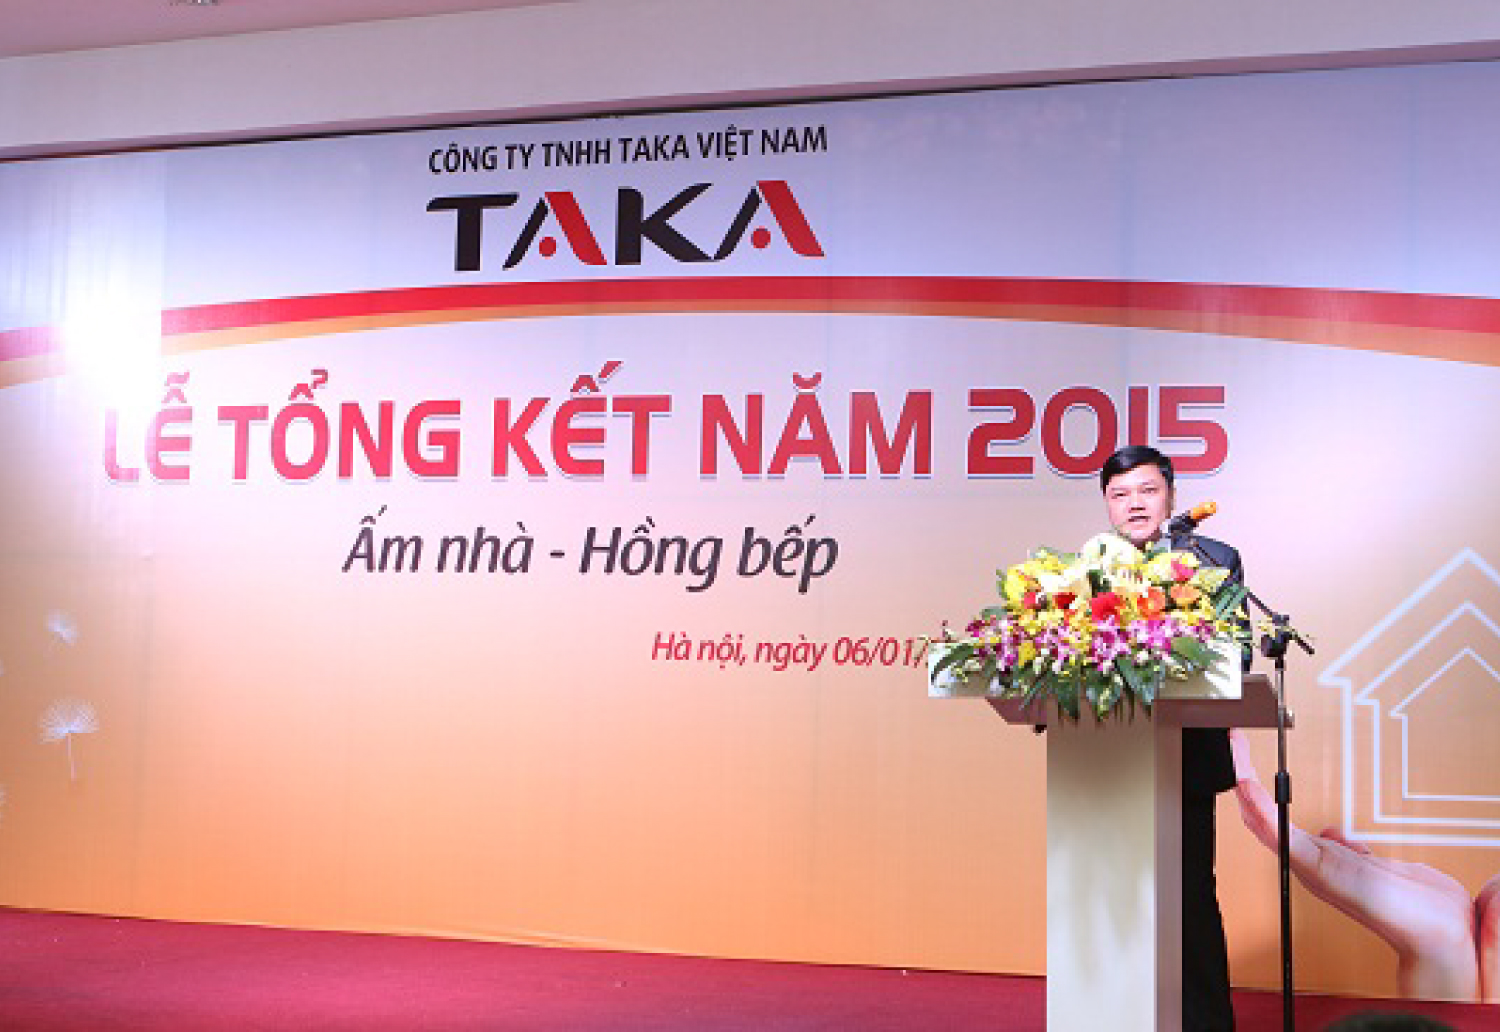 Lễ tổng kết cuối năm 2015 sôi động của công ty Taka